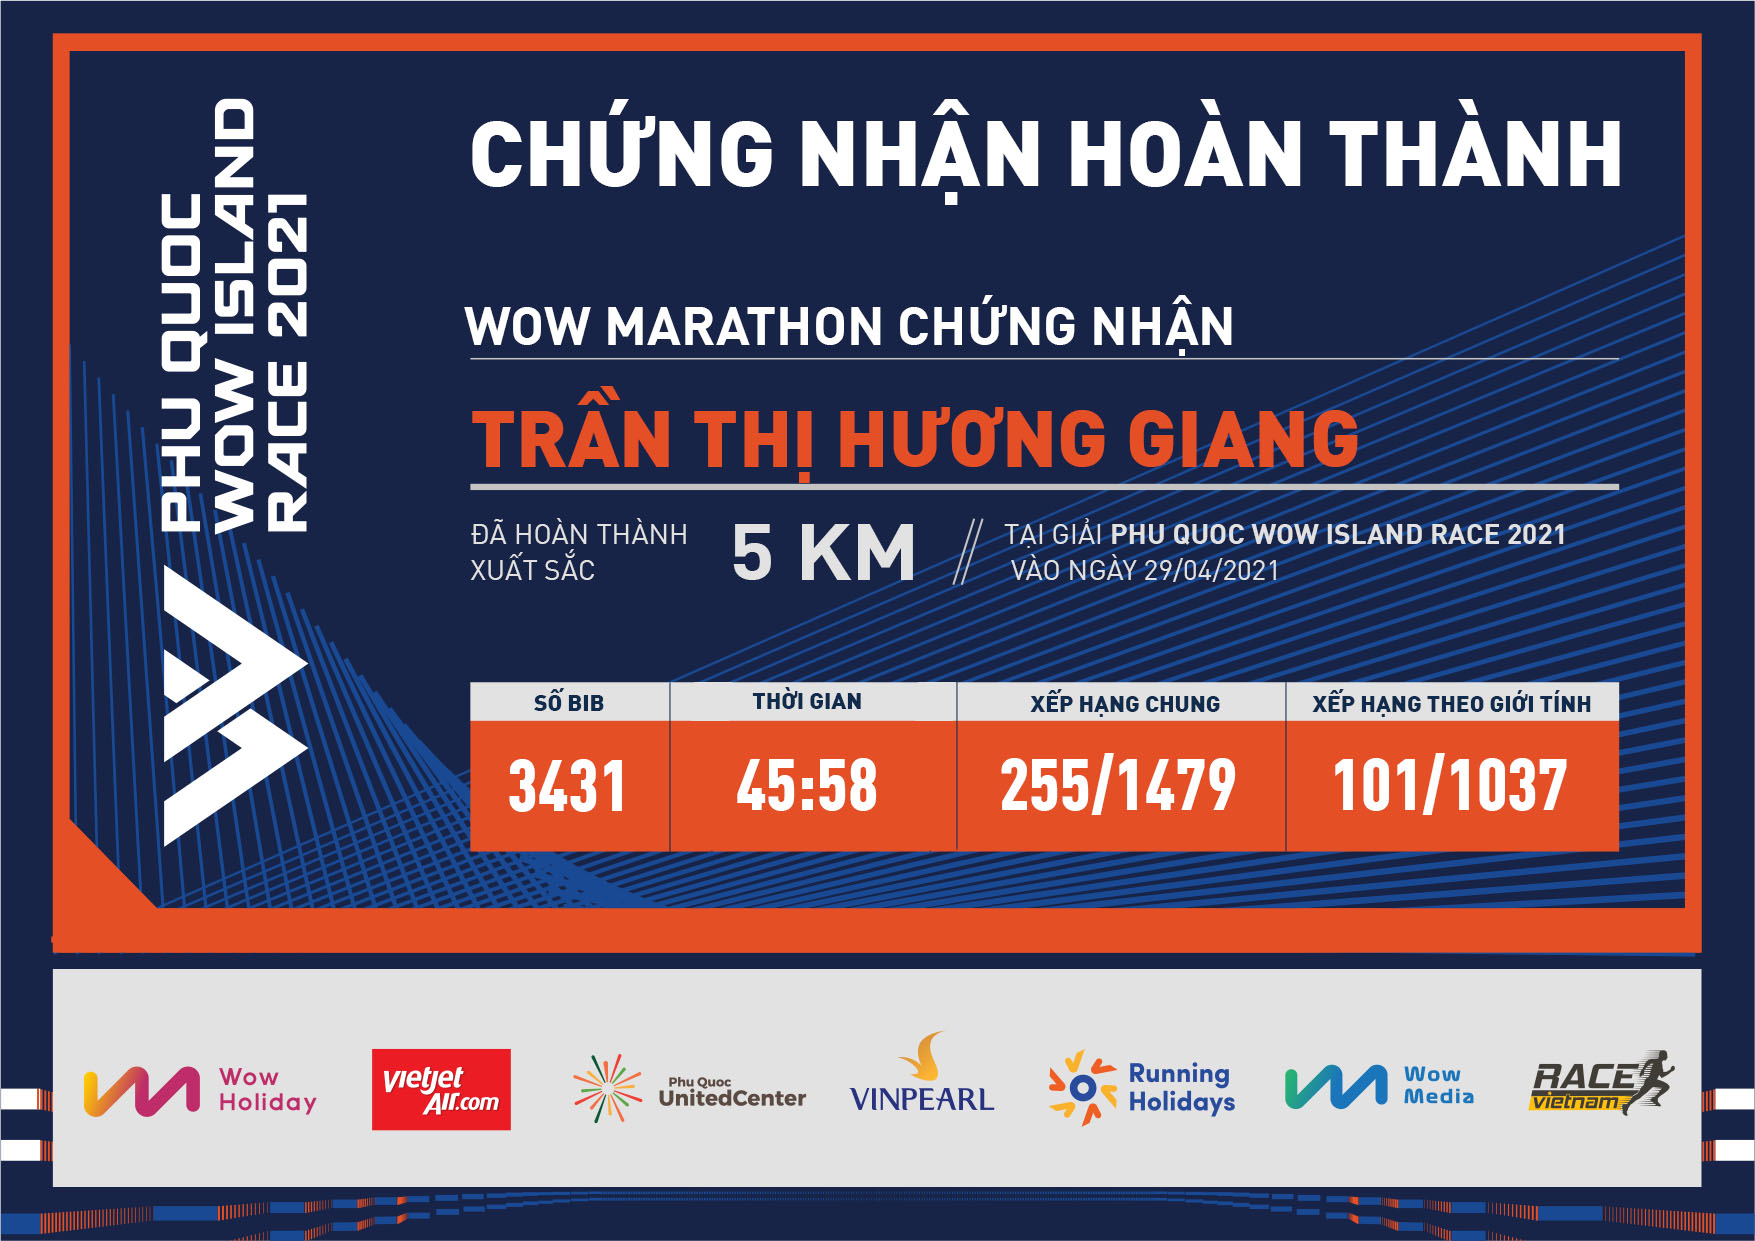 3431 - Trần Thị Hương Giang